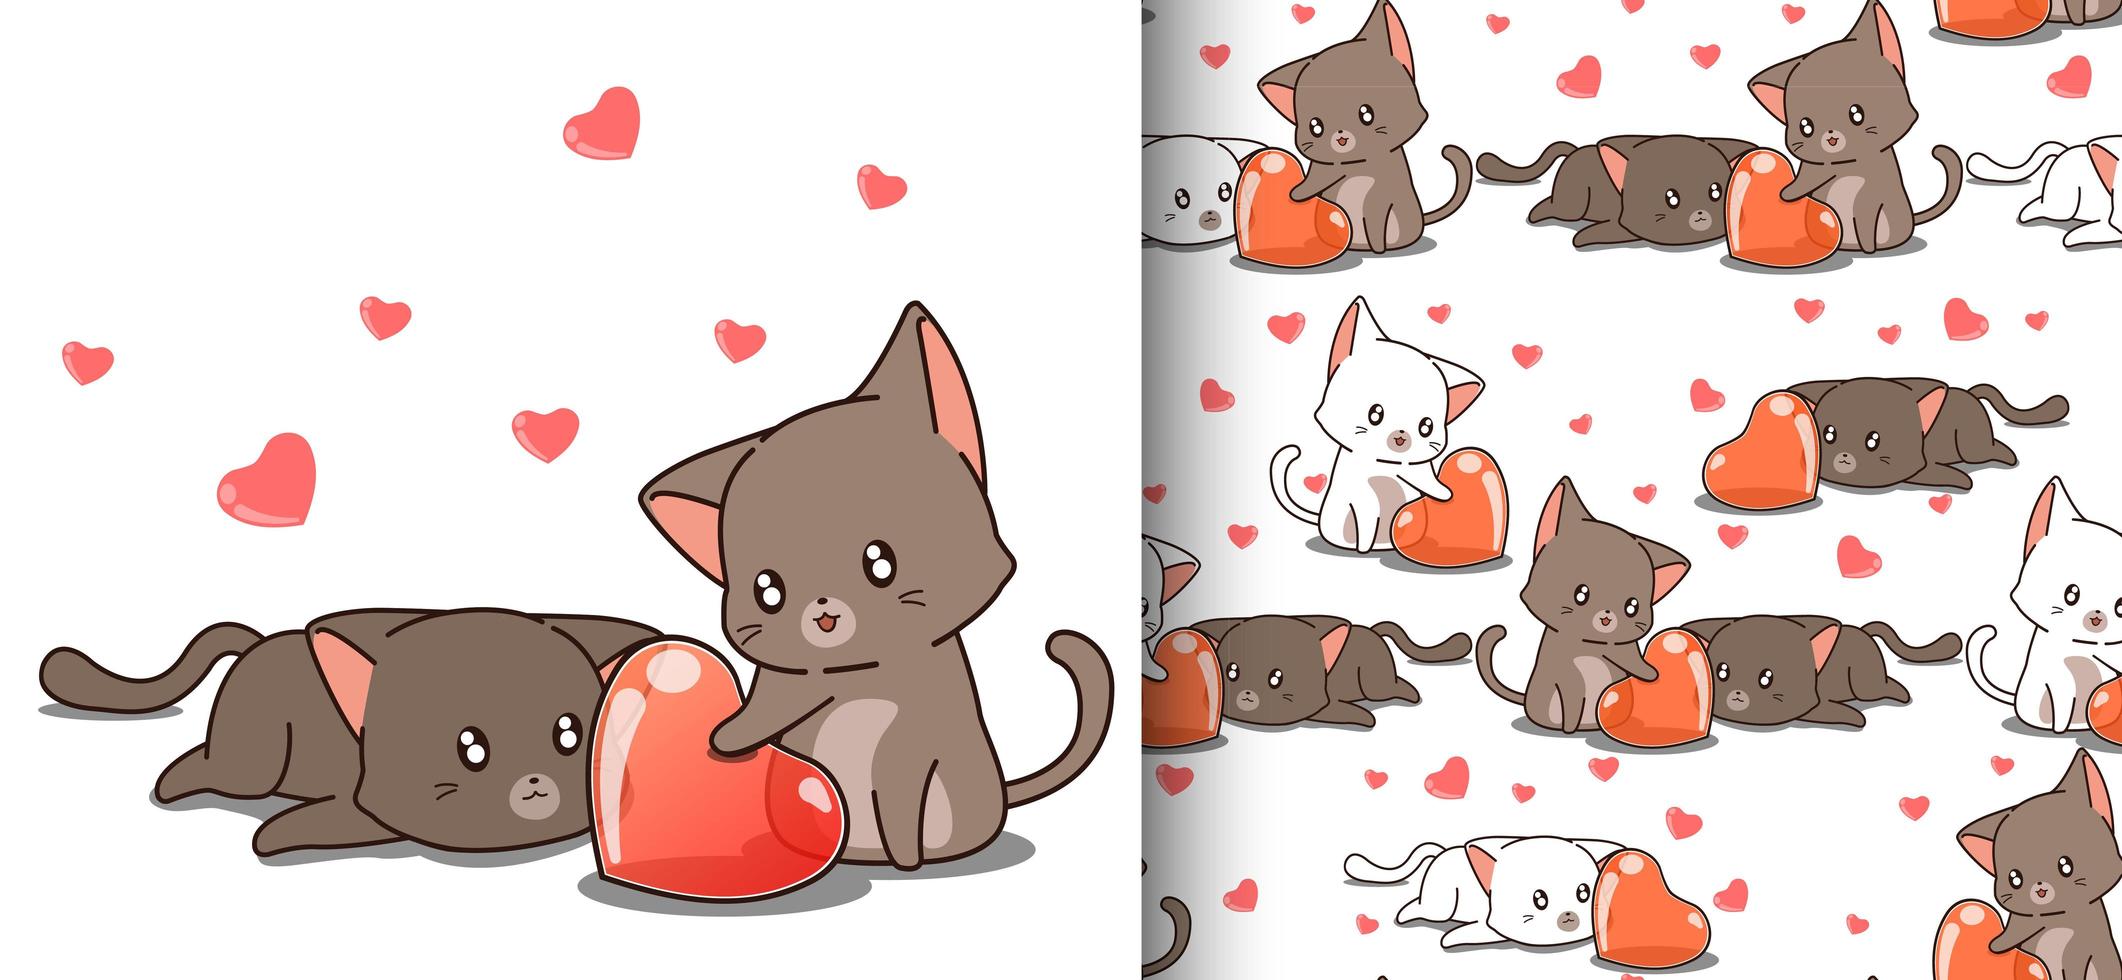 gatos kawaii de patrones sin fisuras mirando al corazón vector